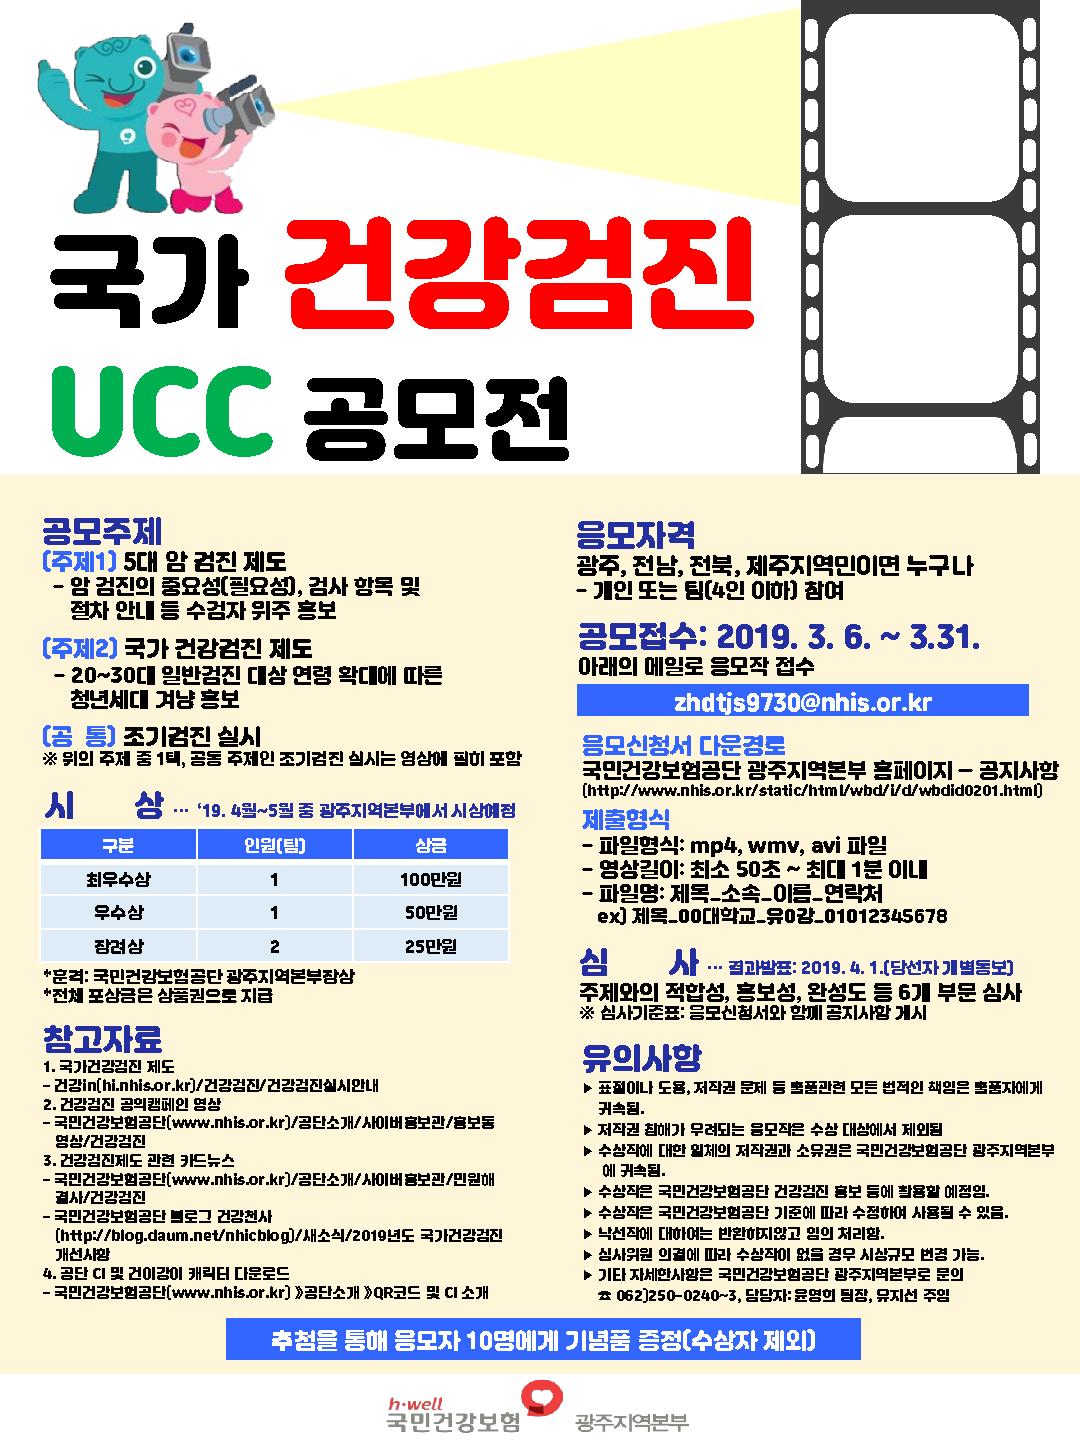  2019년 국가 건강검진 홍보 UCC 공모_1.jpg